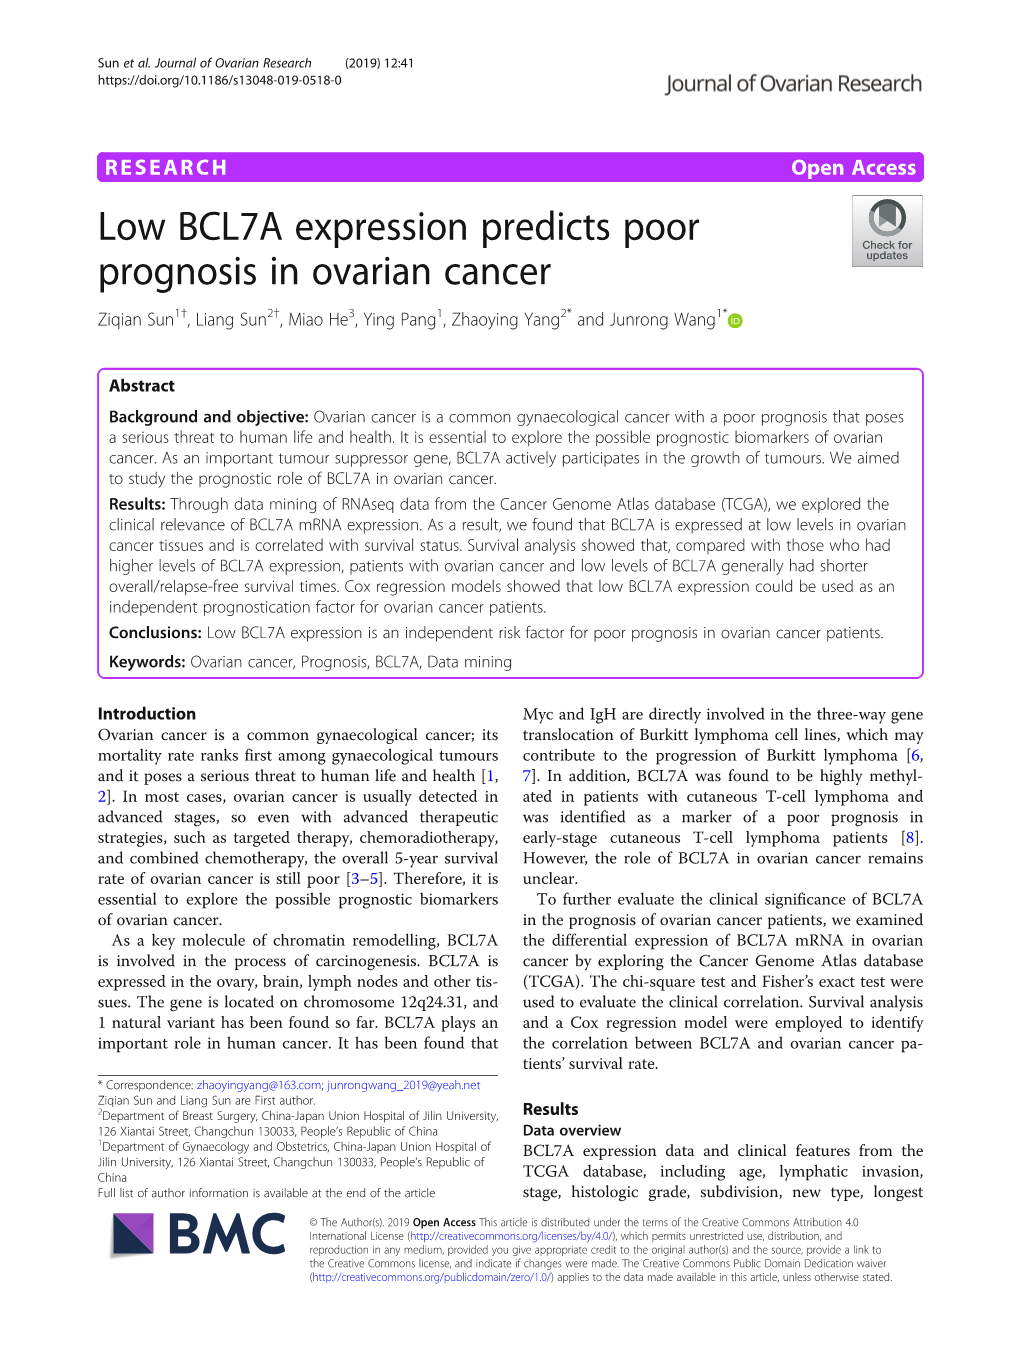 Low BCL7A Expression Predicts Poor Prognosis in Ovarian Cancer Ziqian Sun1†, Liang Sun2†, Miao He3, Ying Pang1, Zhaoying Yang2* and Junrong Wang1*